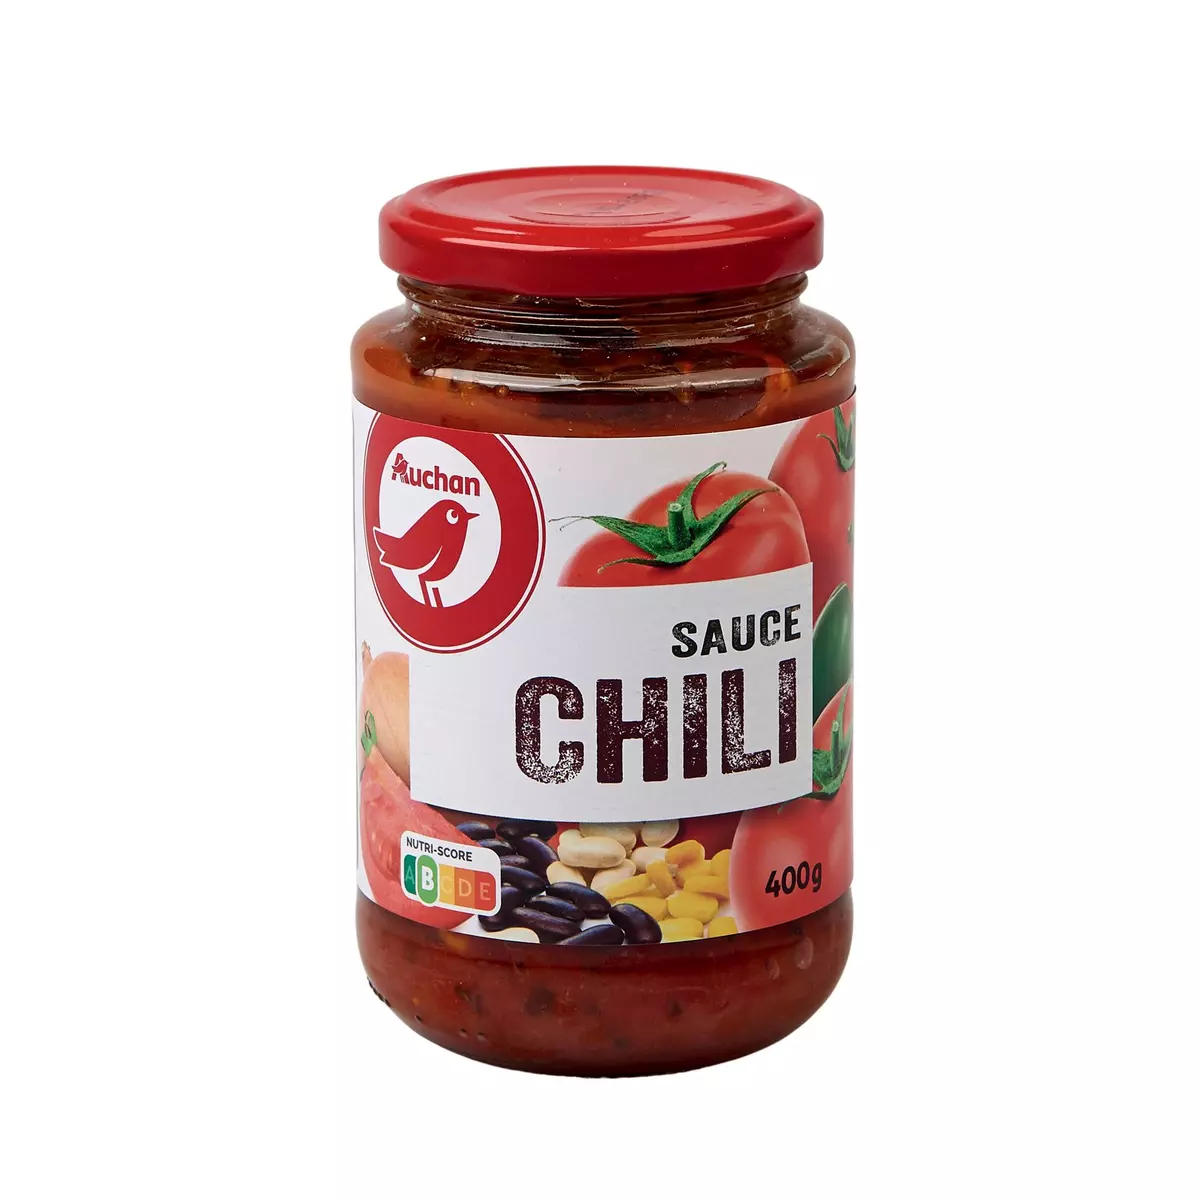 AUCHAN Sauce chili 400g